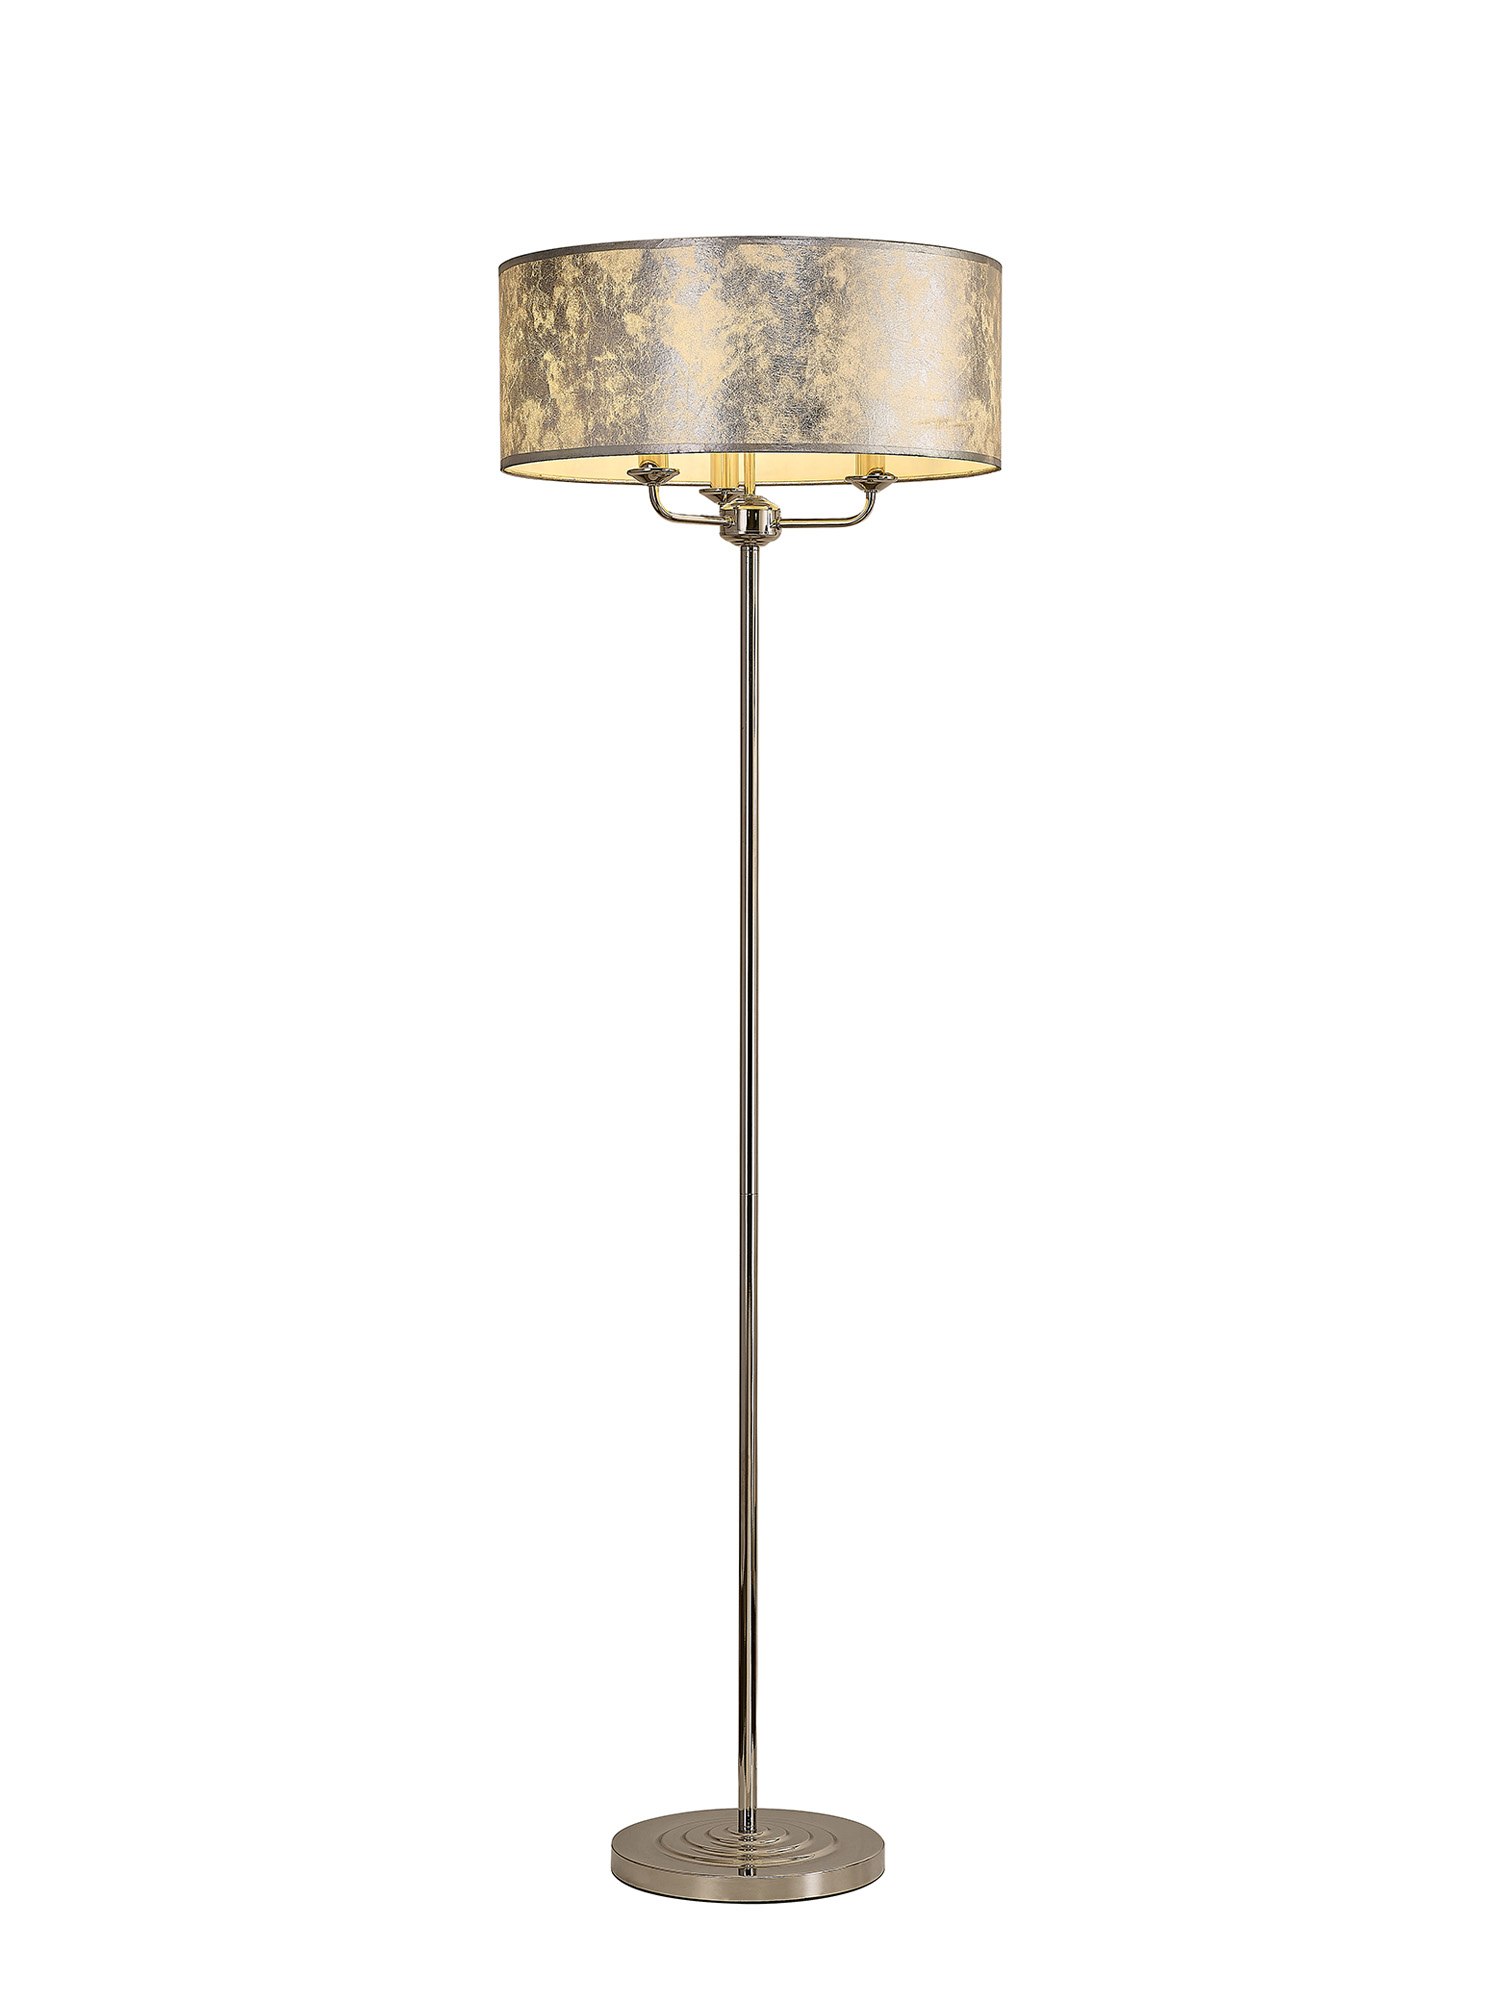 DK0900  Banyan 45cm 3 Light Floor Lamp Polished Nickel, Silver Leaf